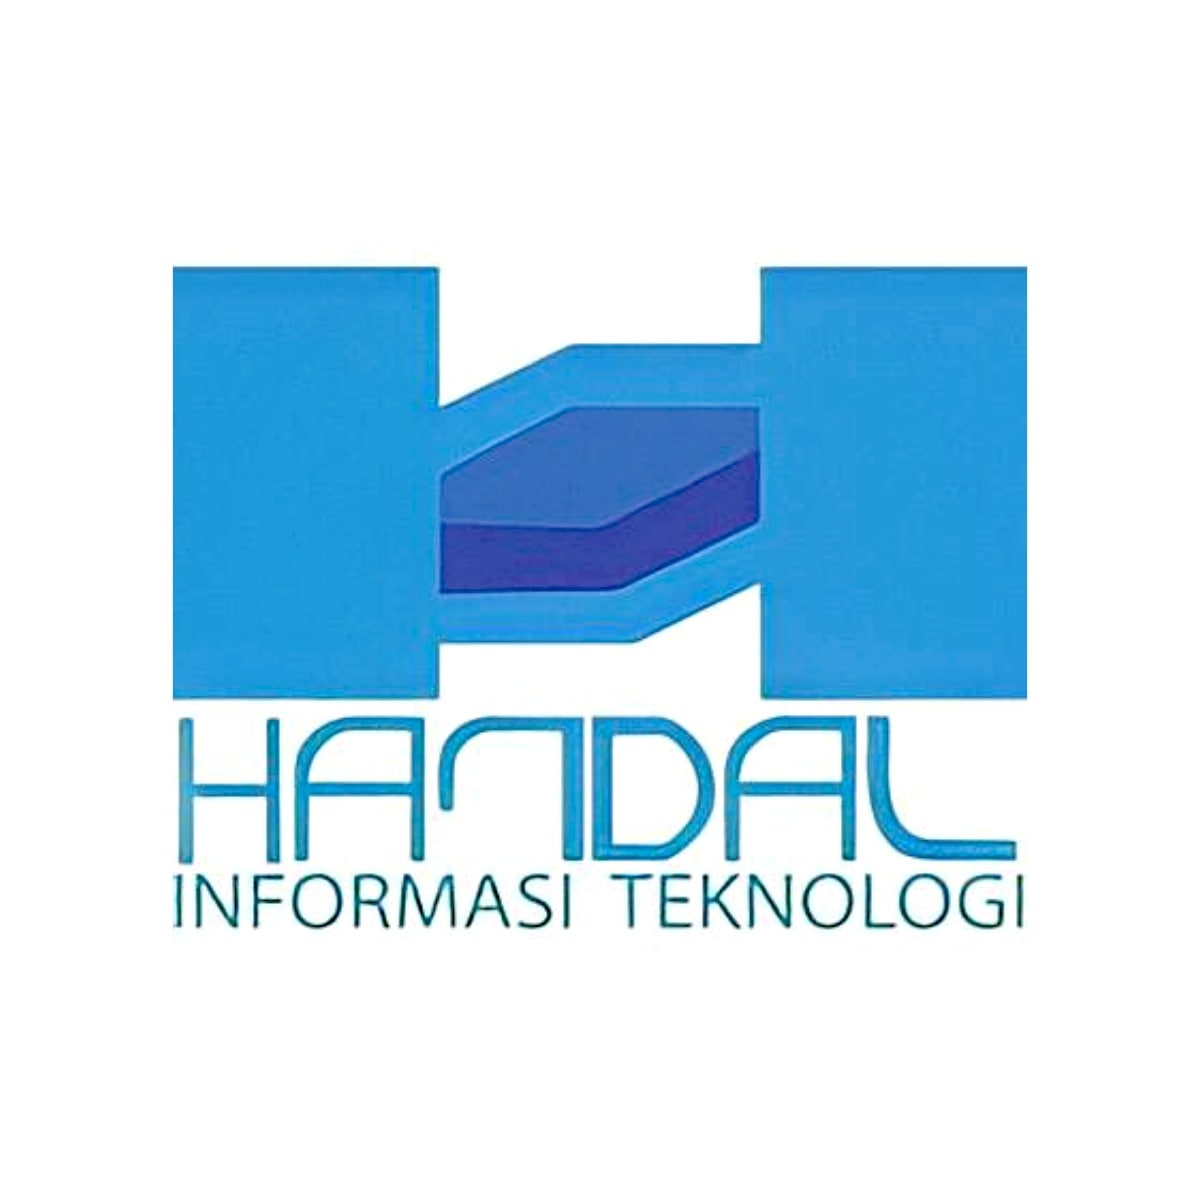 Handal Informasi Teknologi. PT